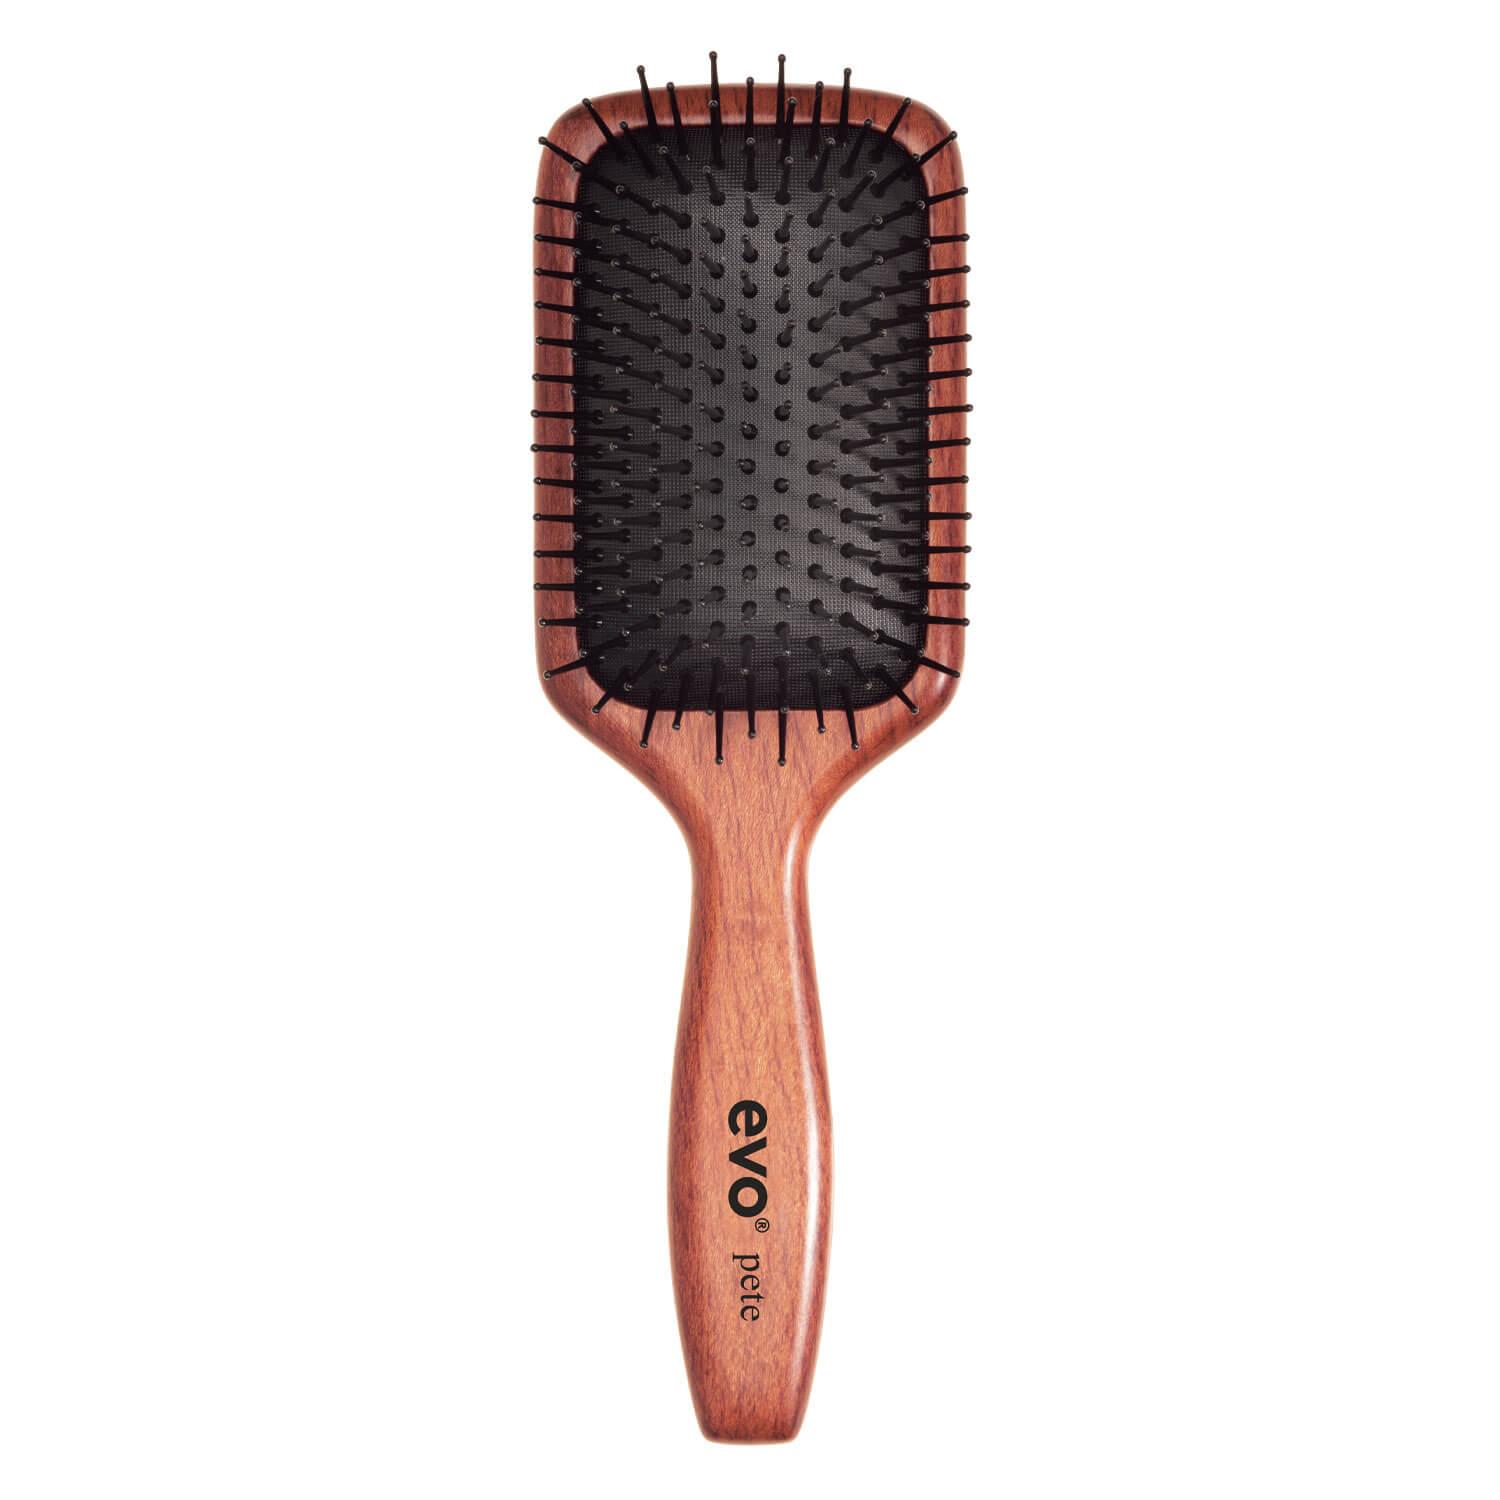 evo brushes - pete ionic paddle brush